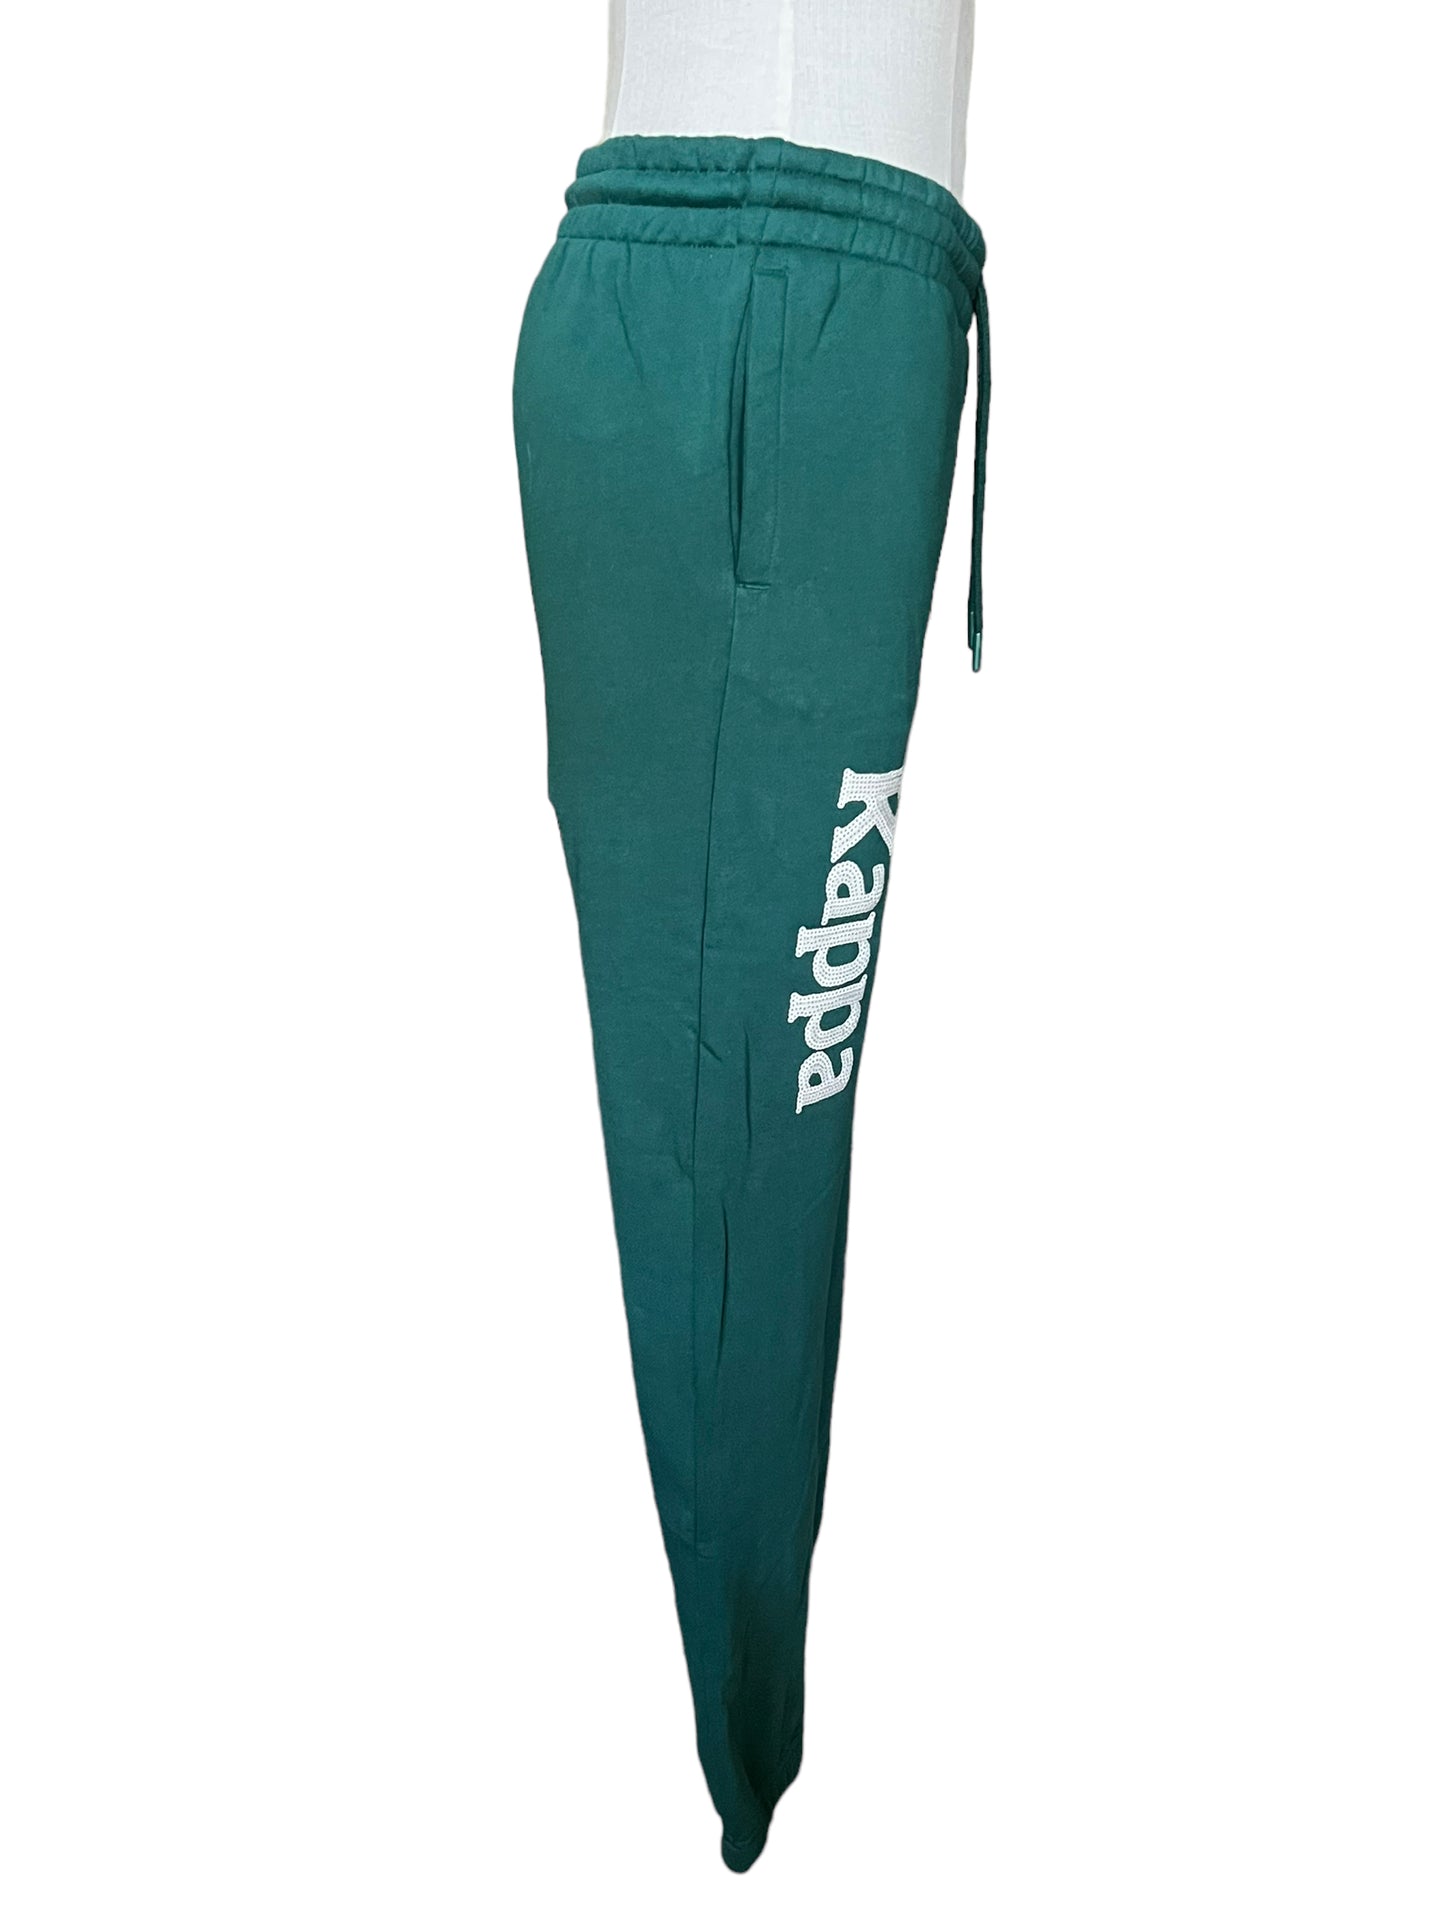 Kappa Size M Green Authentic Glitty Sweatpants